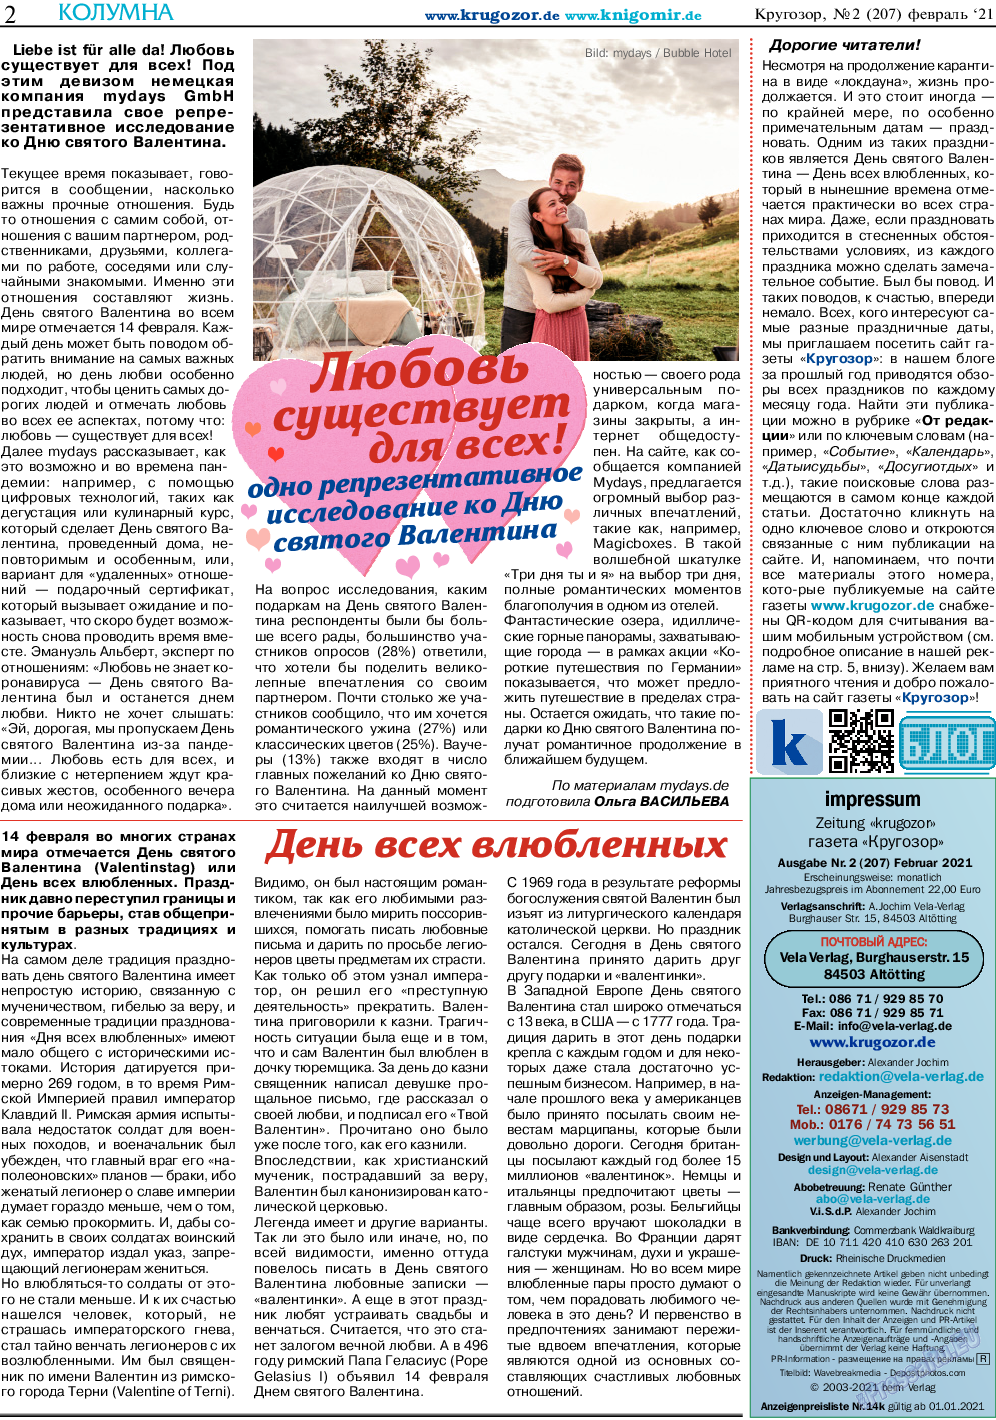 Кругозор, газета. 2021 №2 стр.2